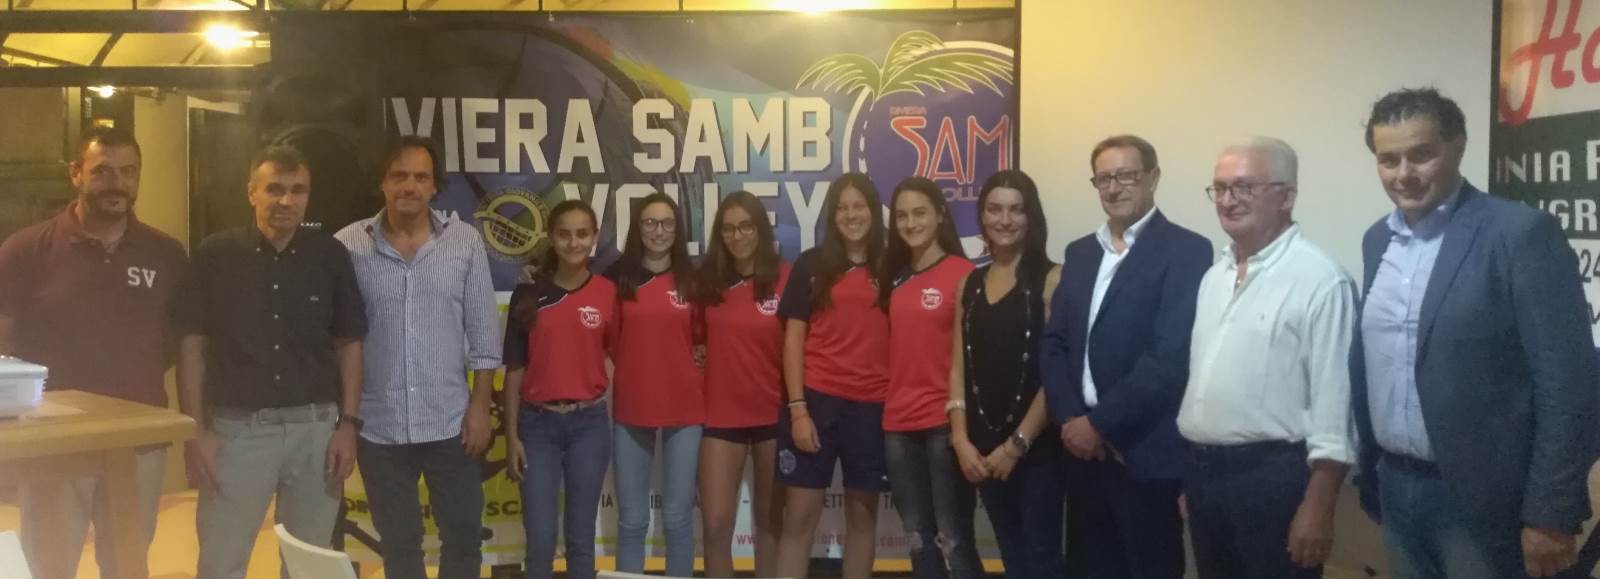 Samb Volley: presentata la 41esima stagione